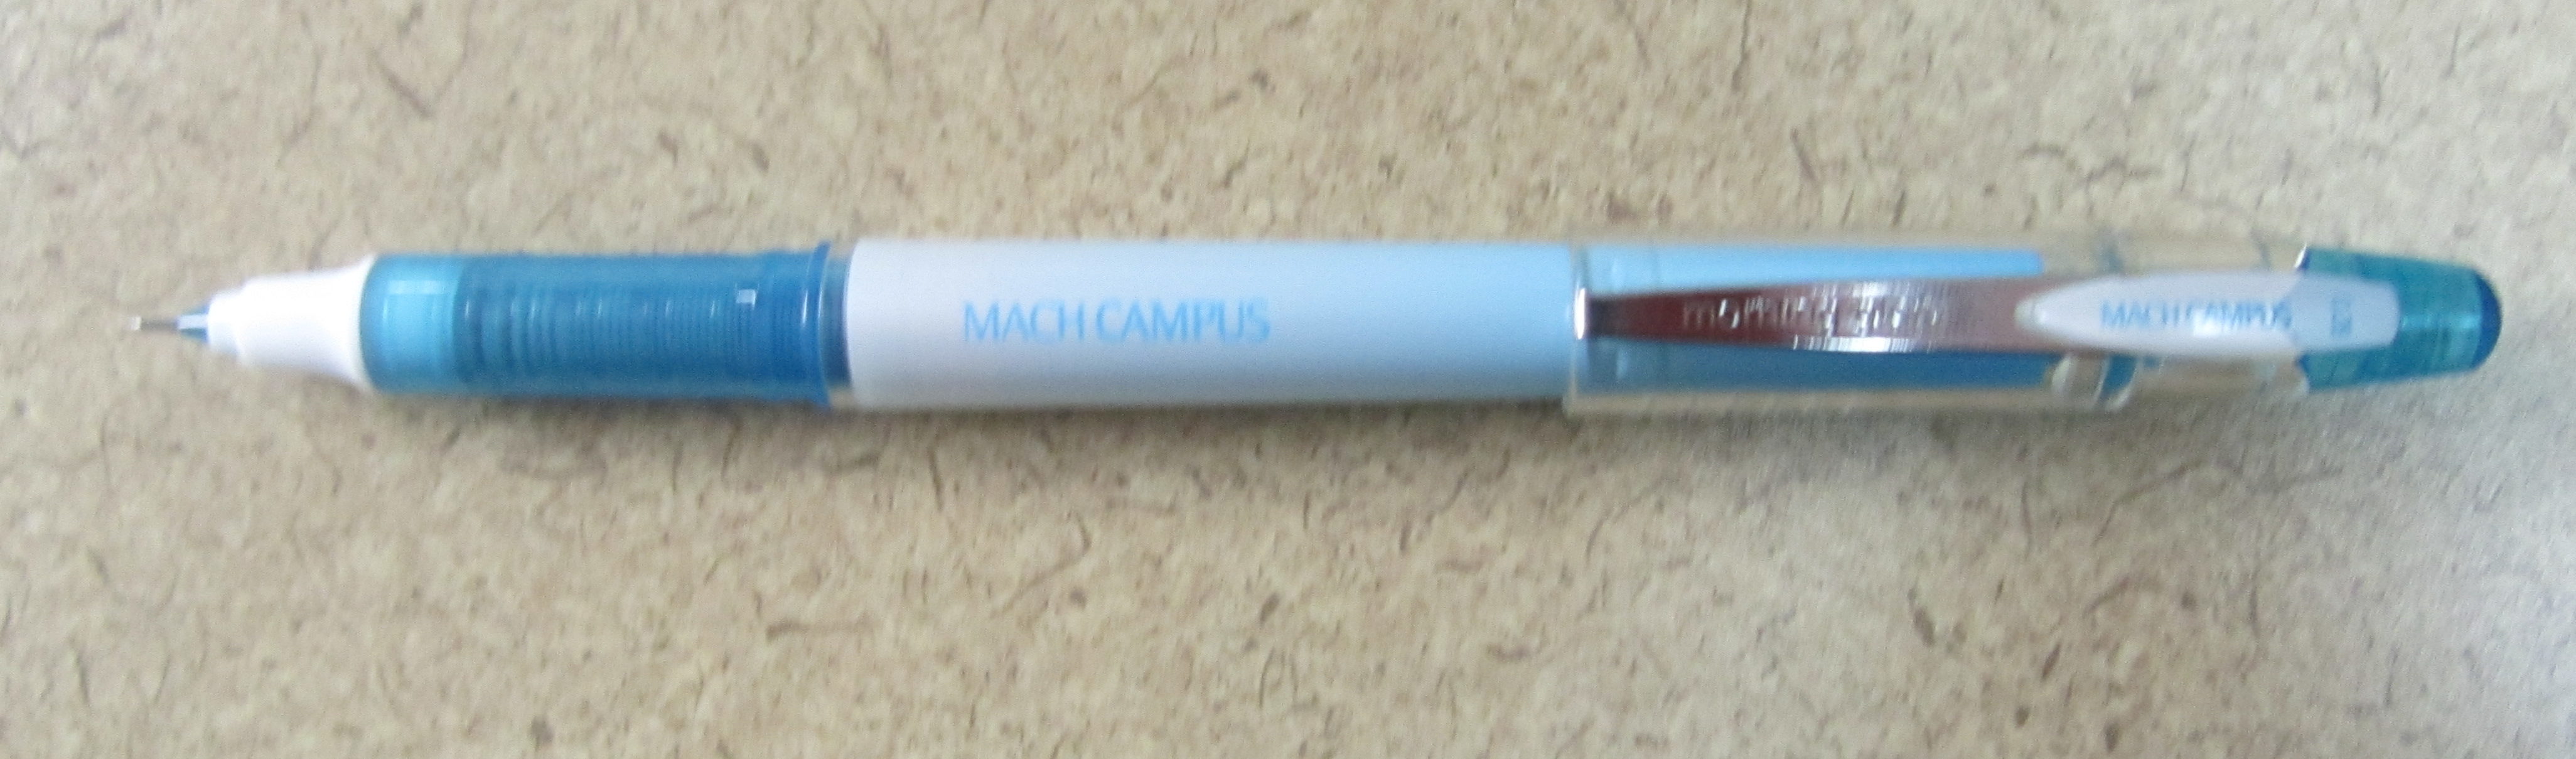 JetPens Fine Tip Pen Sampler - Blue